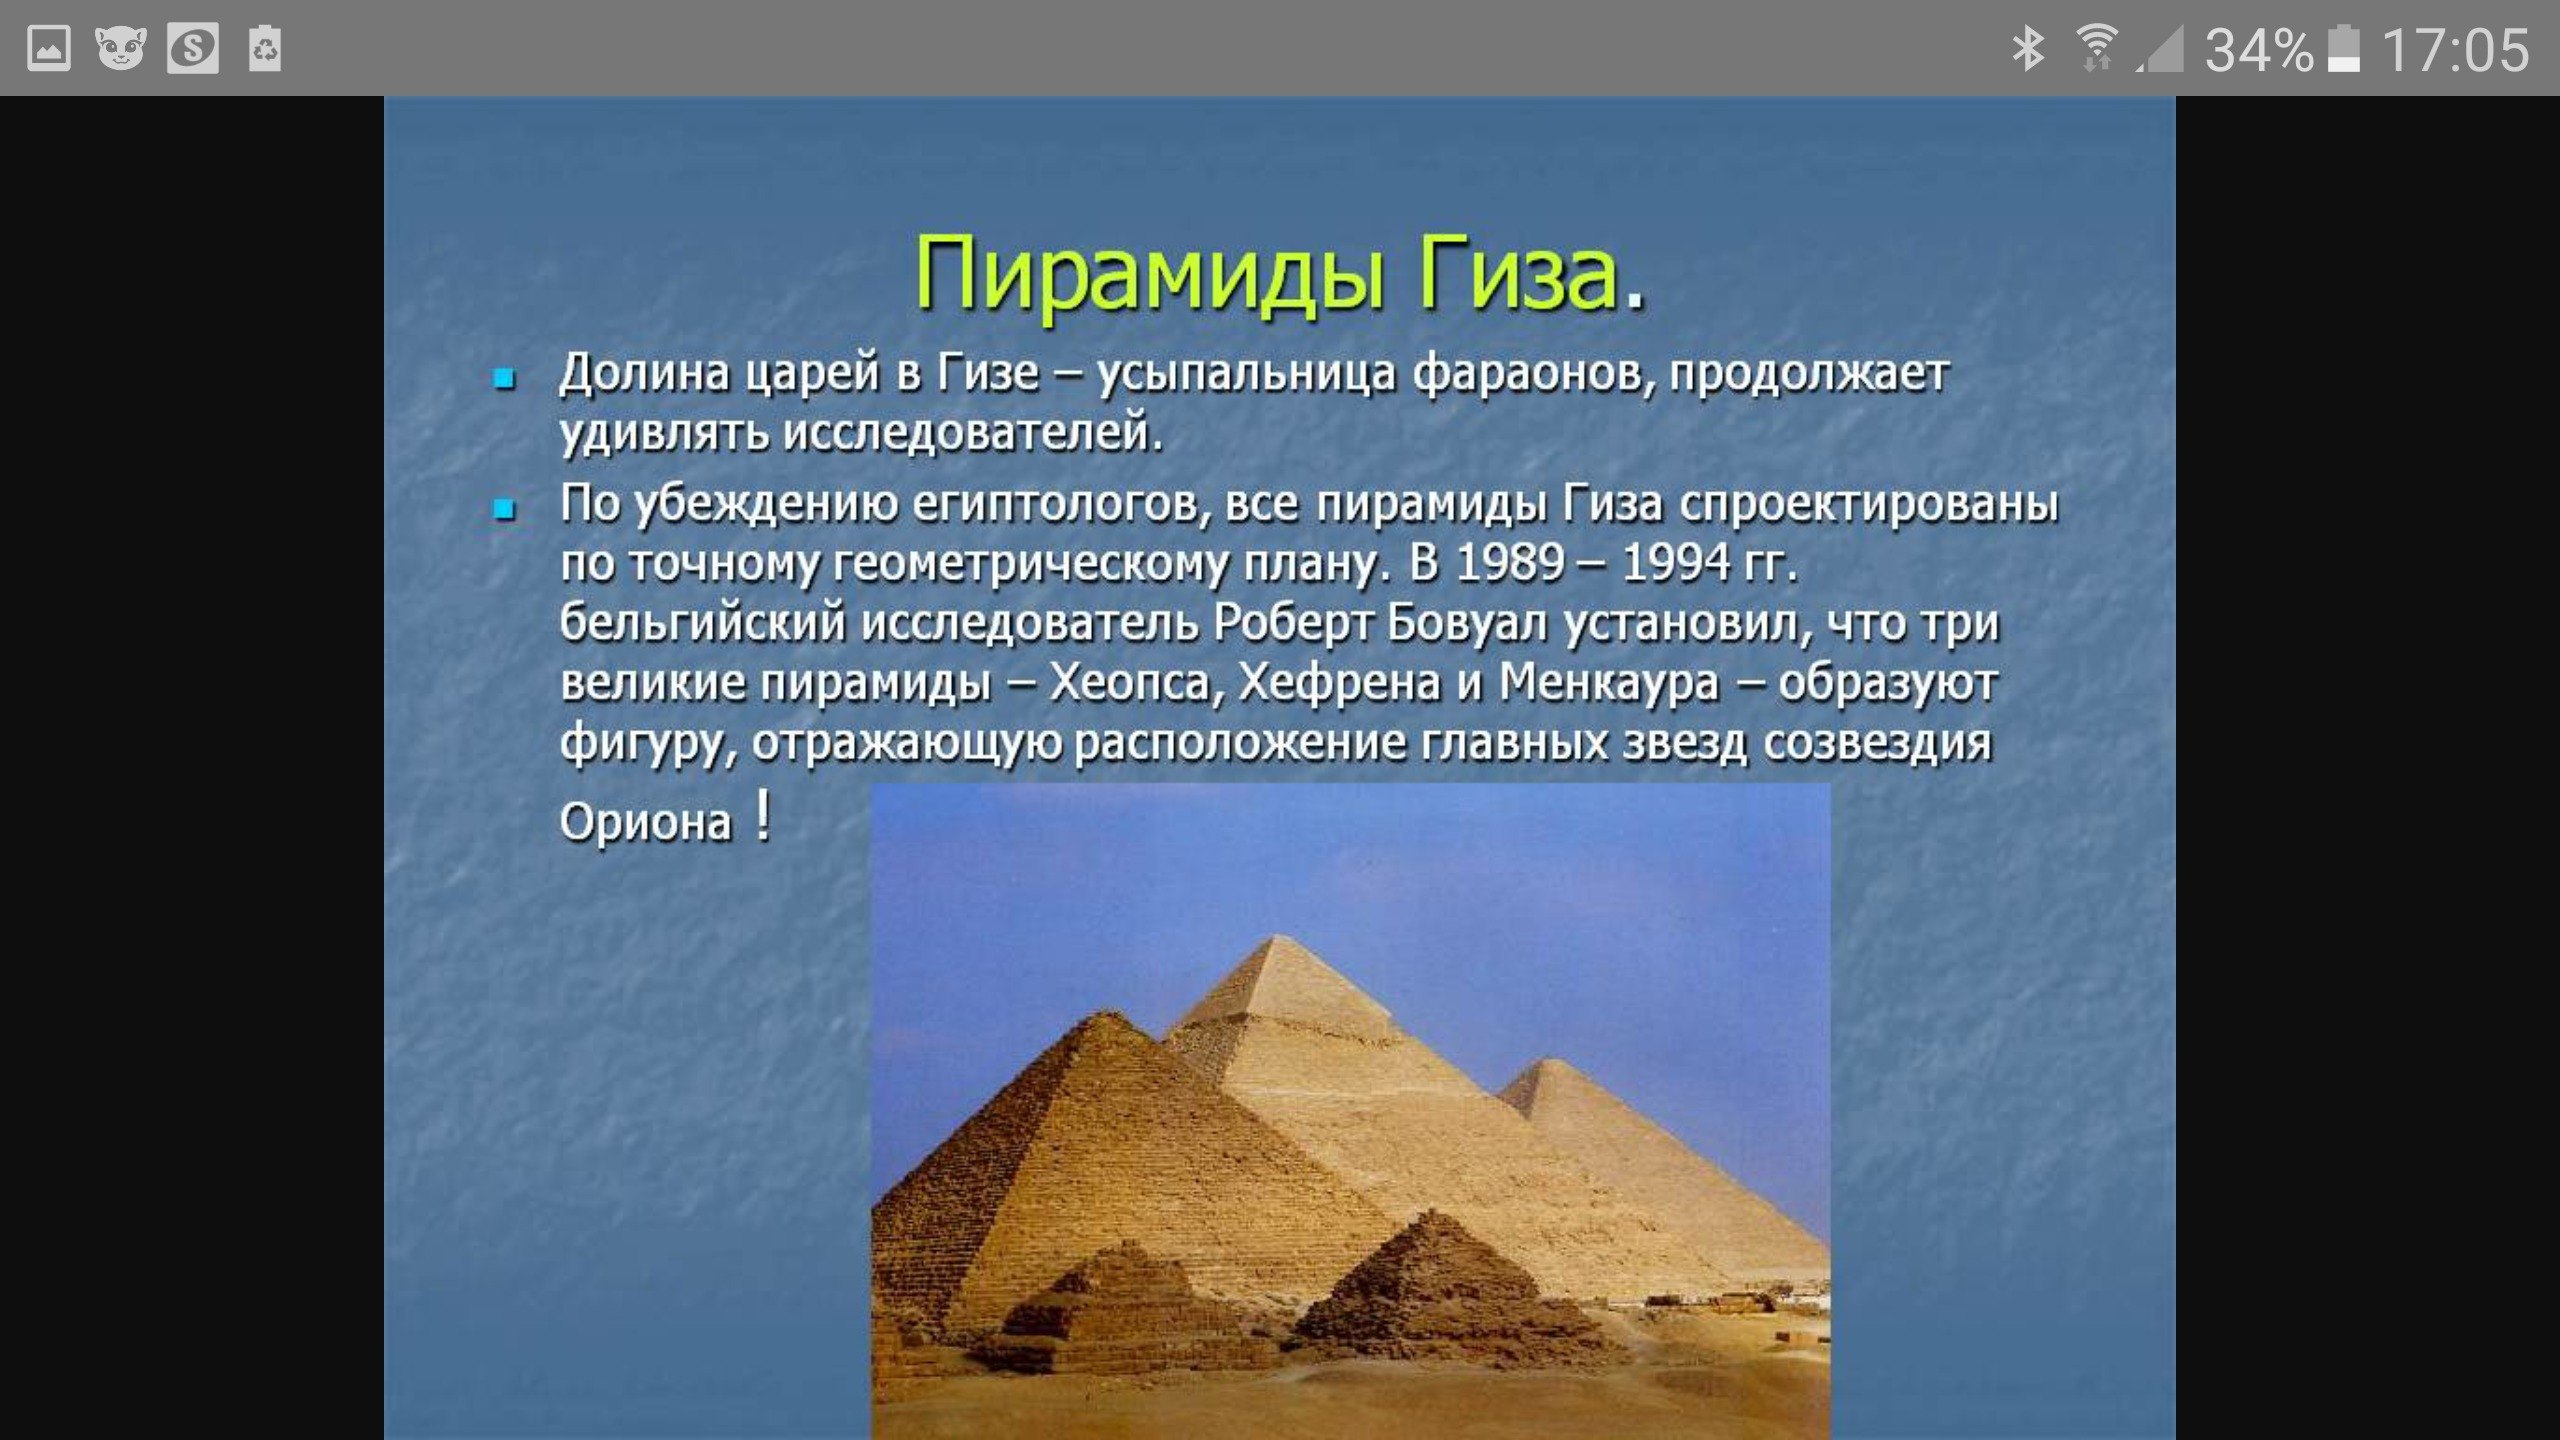 Древний египет 5 фактов. Пирамиды древнего Египта доклад. Пирамида фараона Хеопса высота. Пирамида Хеопса древний Египет проект. Гиза Долина царей.